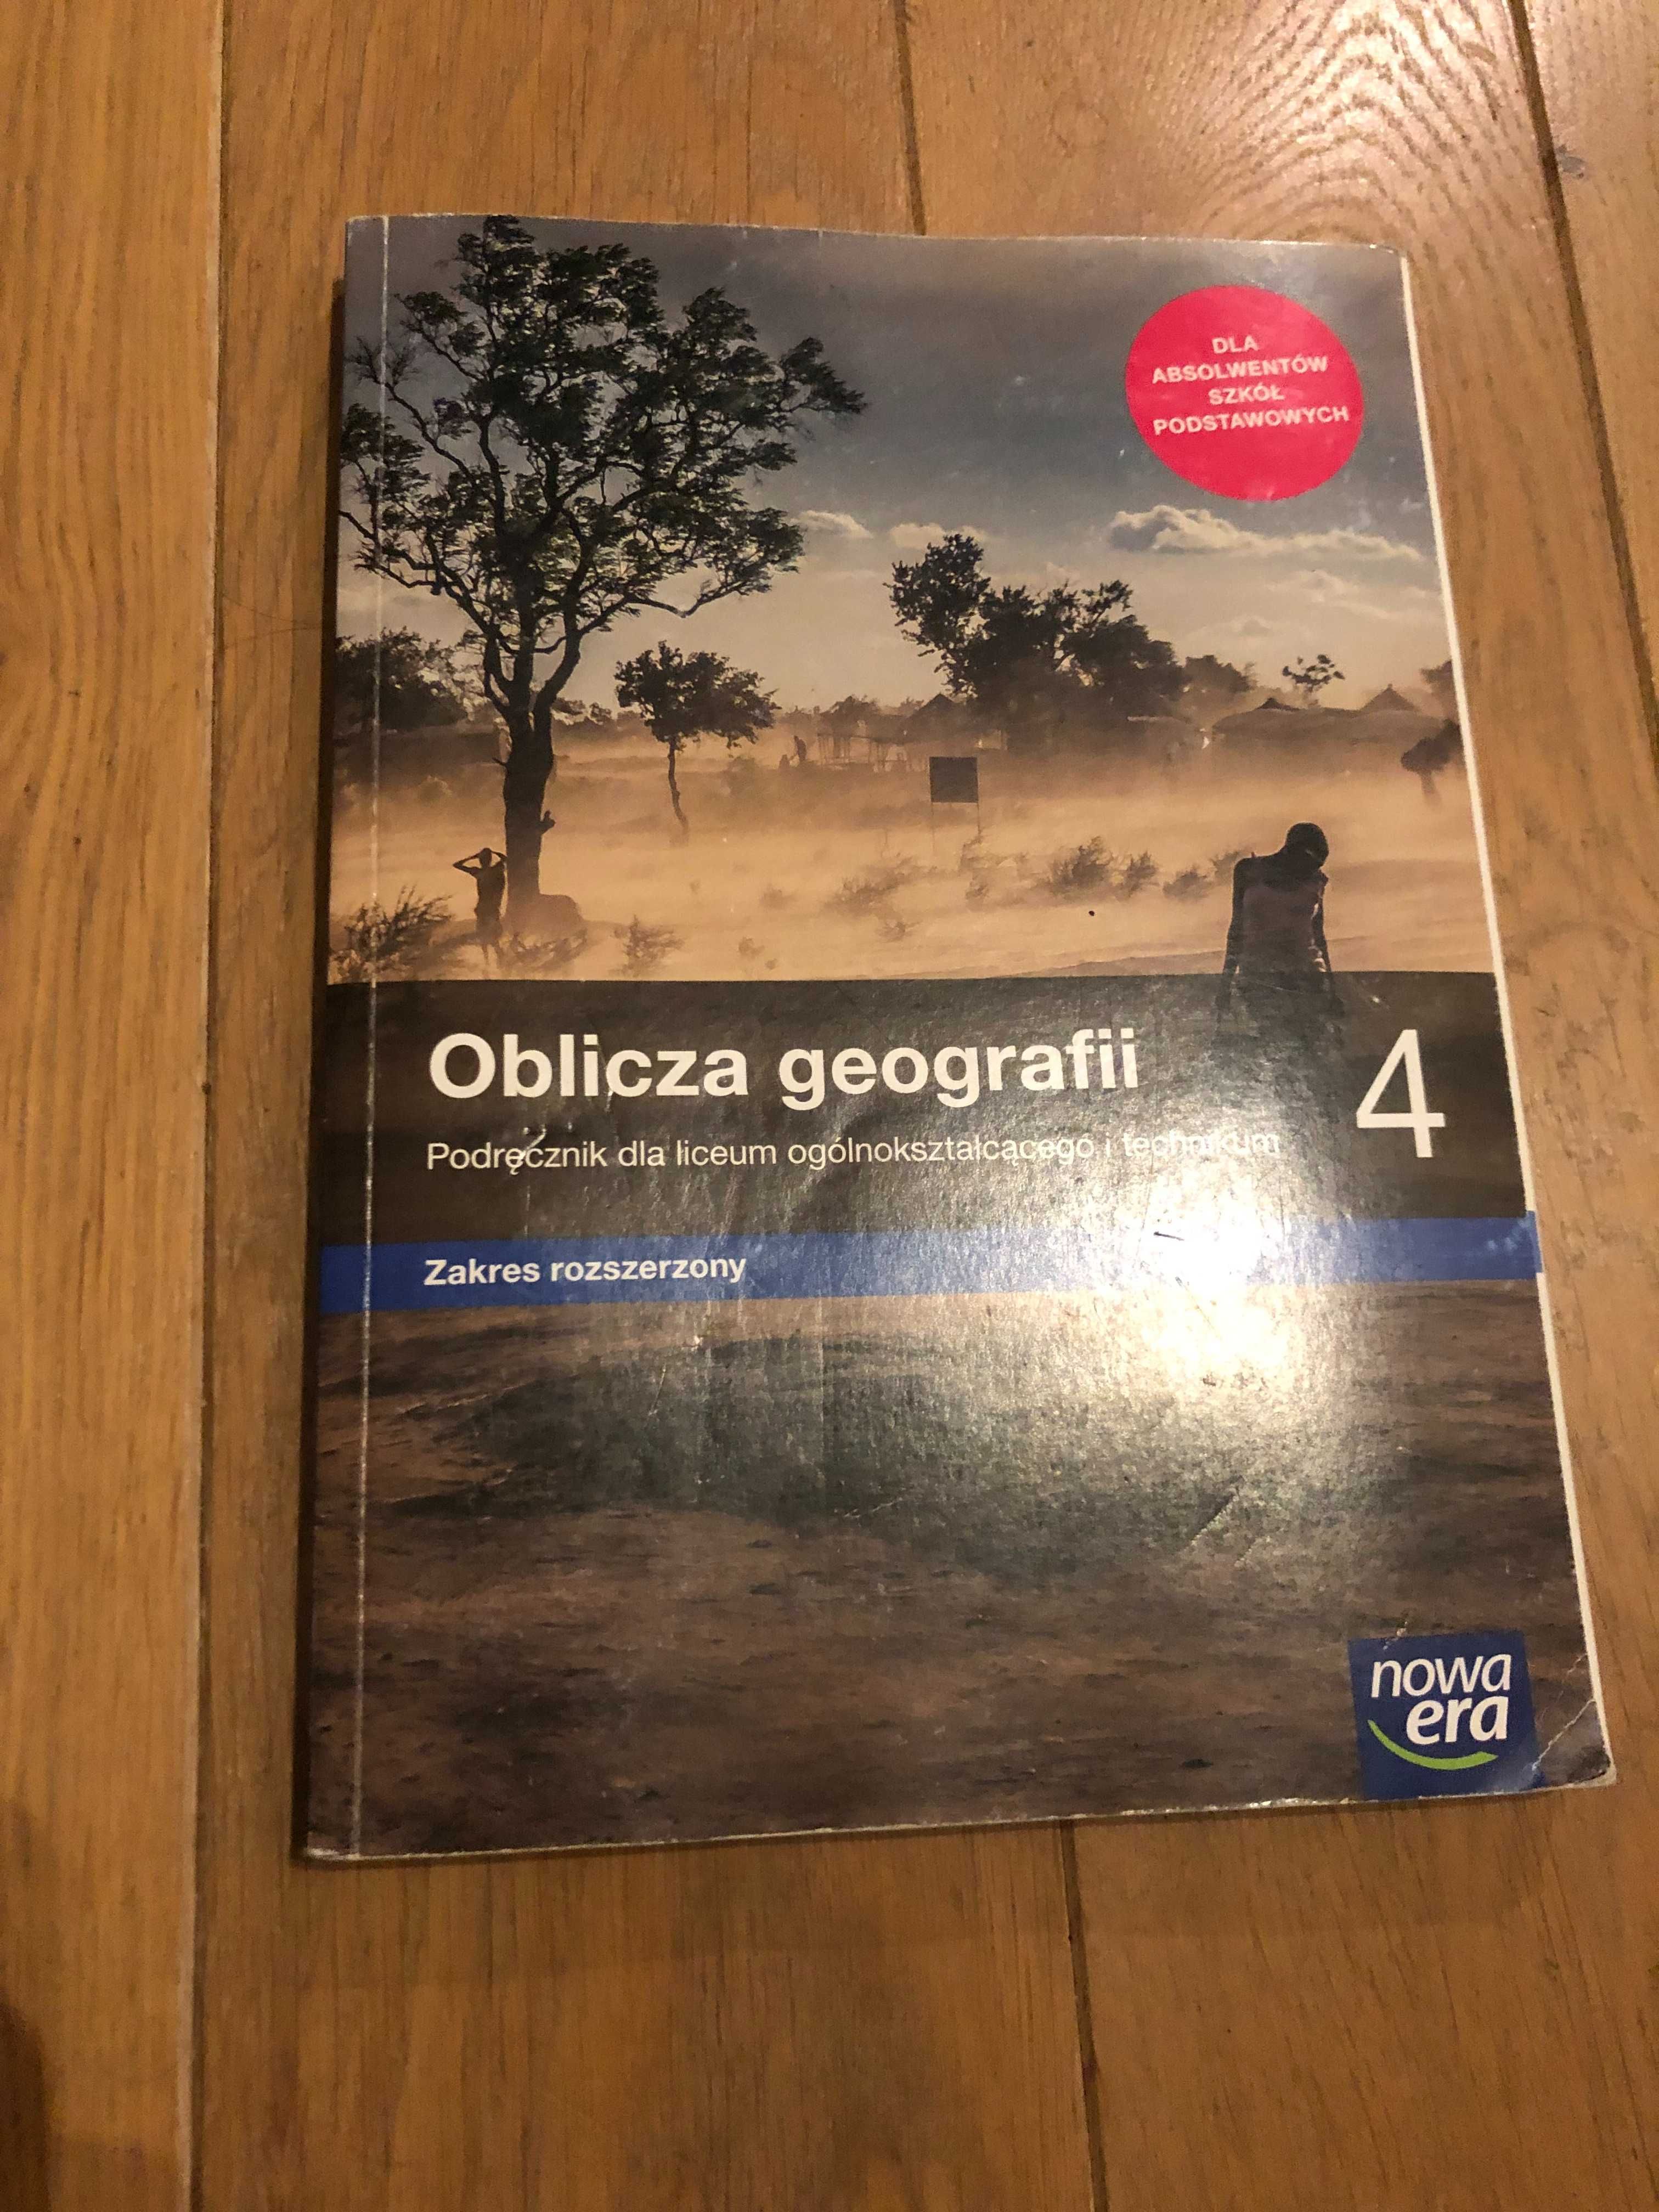 Podręcznik do geografii, Oblicza geografii 4, rozszerzenie, Nowa era